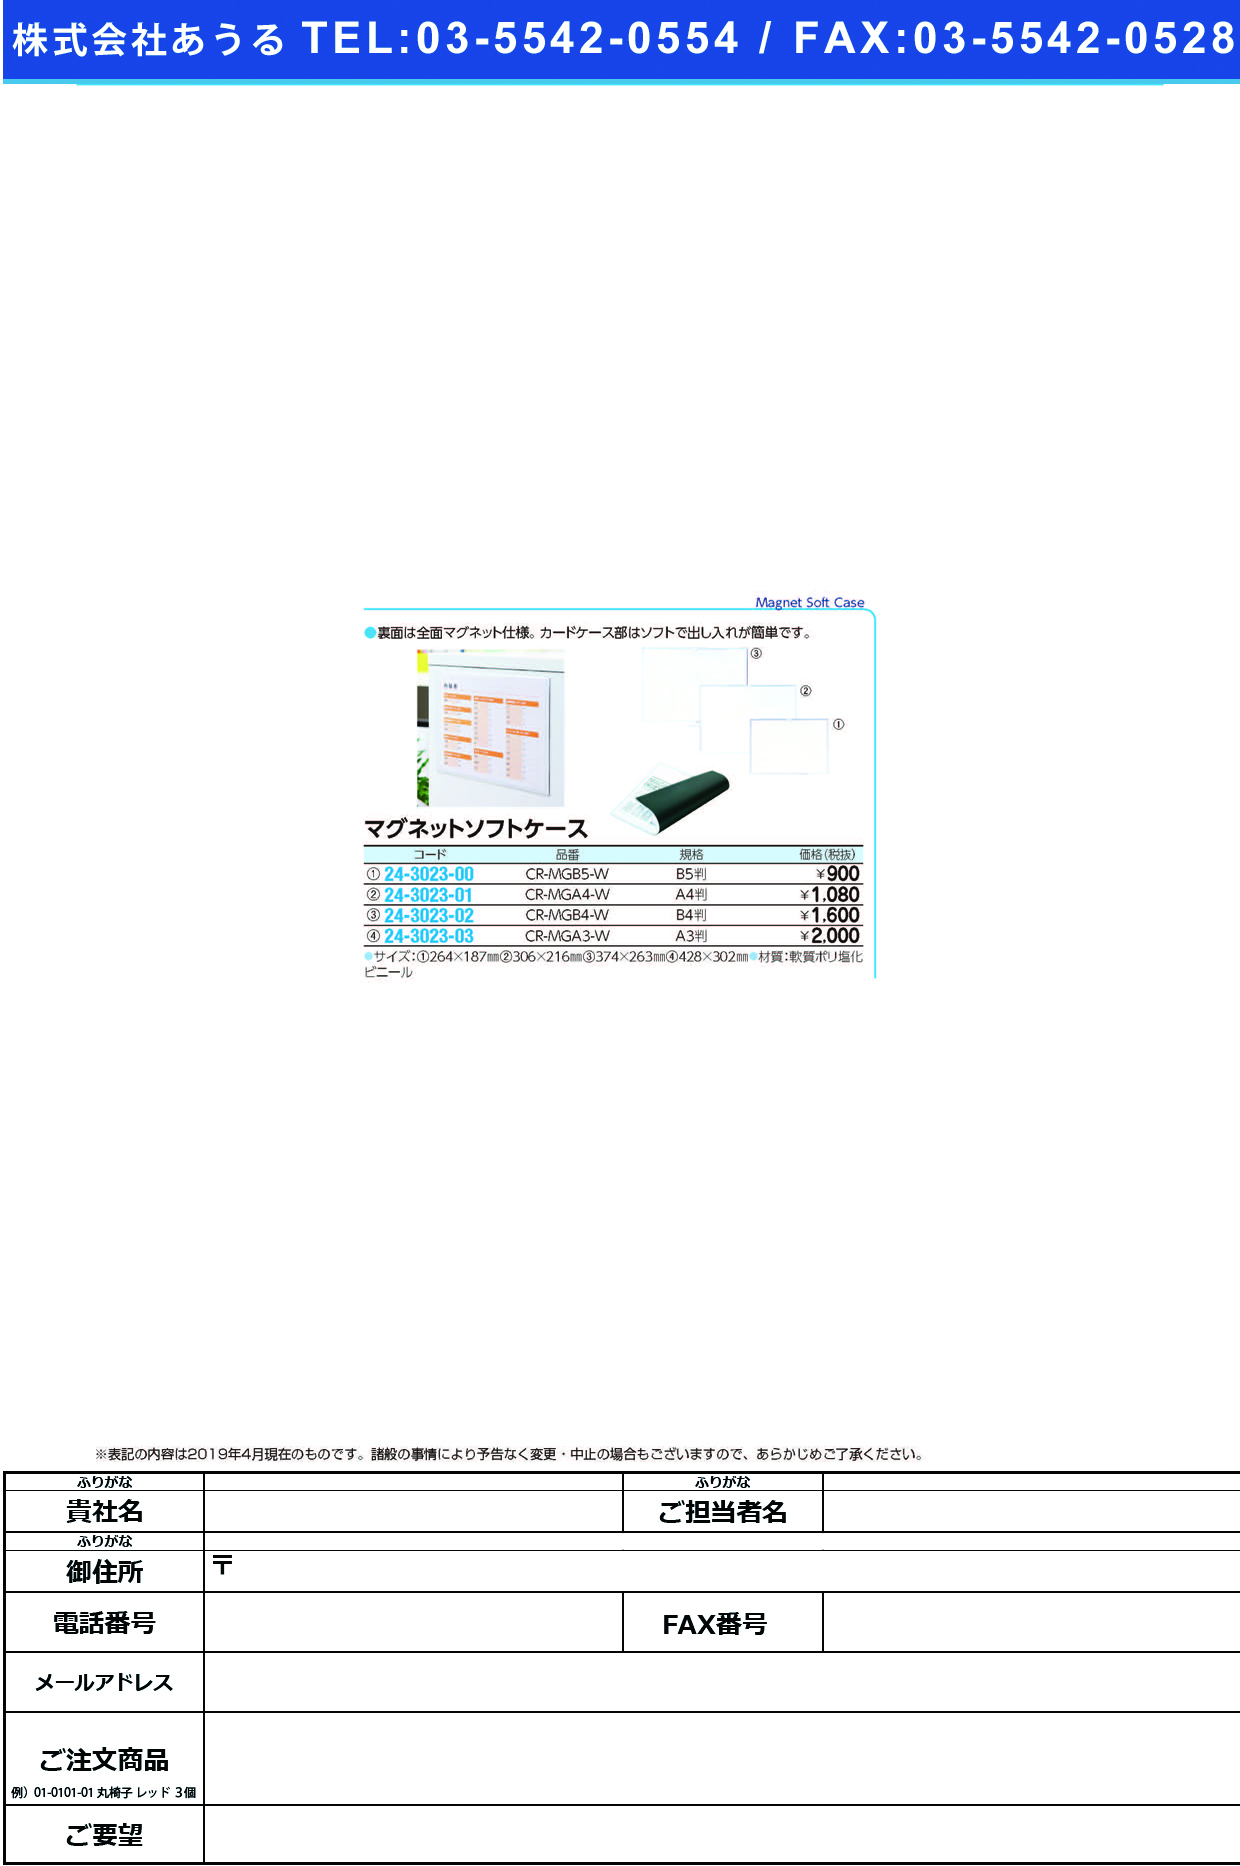 (24-3023-02)マグネットソフトケース CR-MGB4-W(B4) ﾏｸﾞﾈｯﾄｿﾌﾄｹｰｽ【1台単位】【2019年カタログ商品】